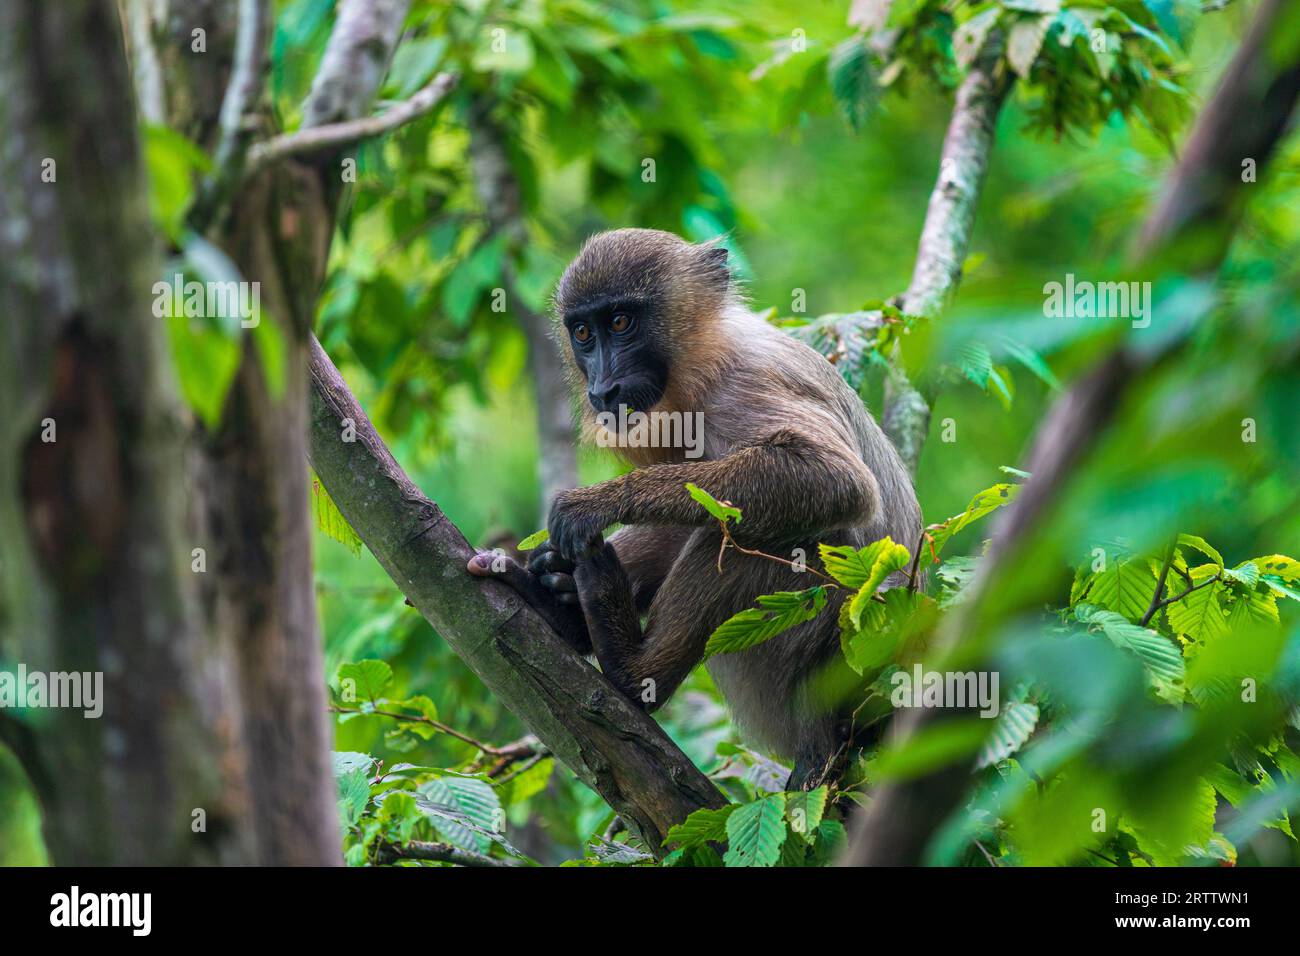 Jeune singe foreur, Mandrillus leucophaeus, assis sur la branche de l'arbre Banque D'Images